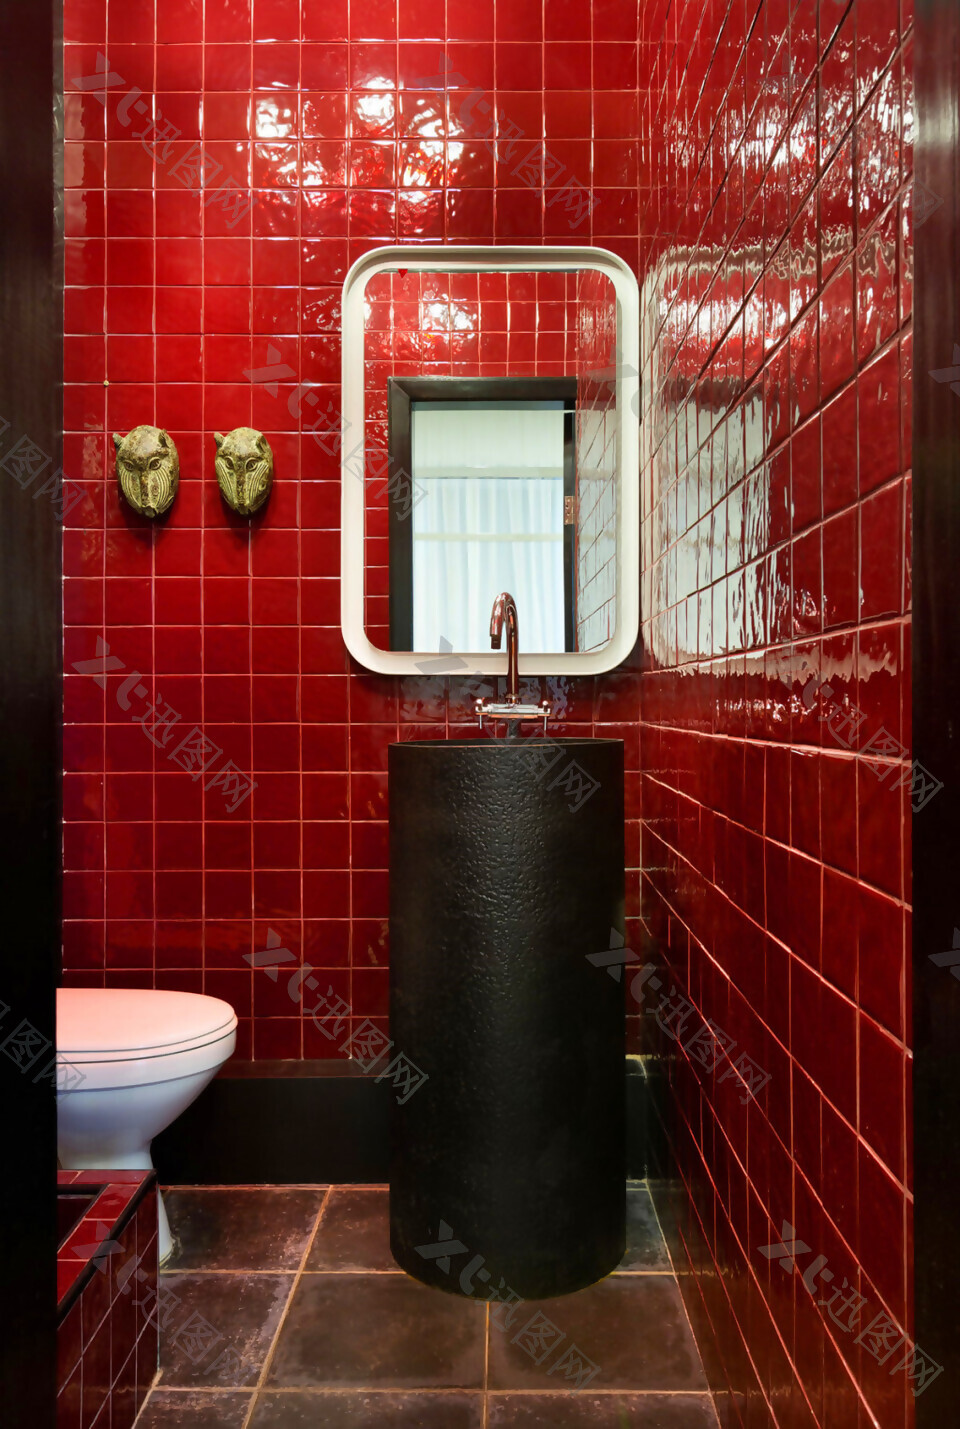 简约卫生间红色墙砖装修效果图